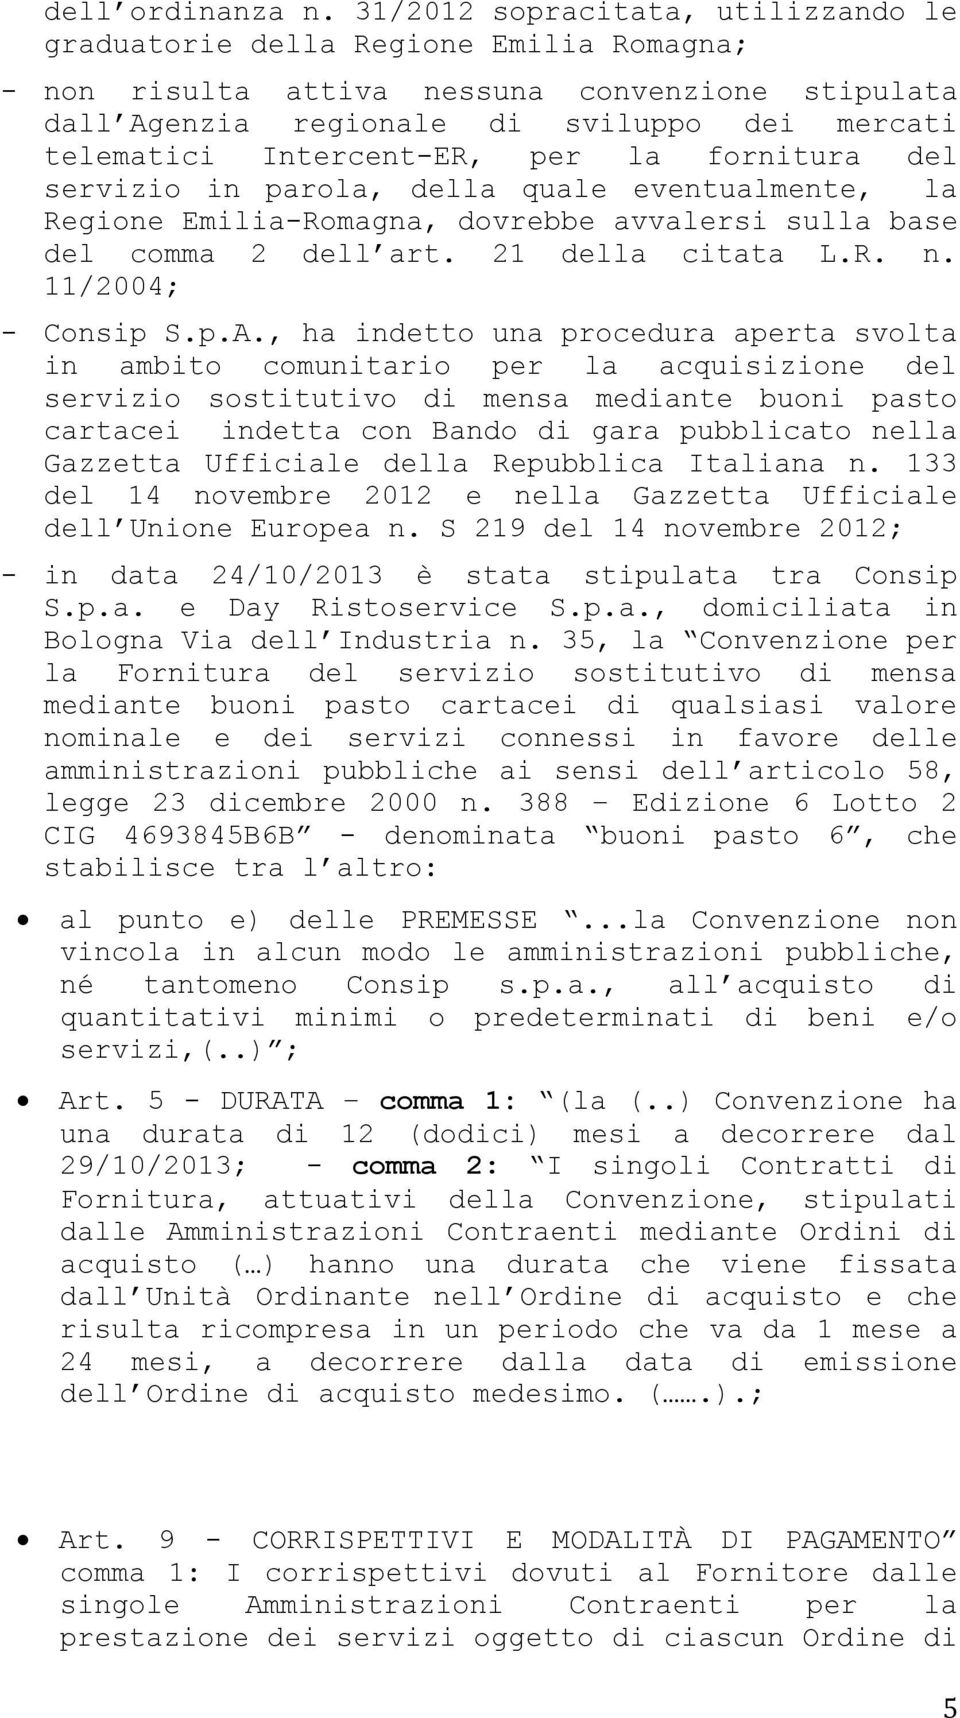 Intercent-ER, per la fornitura del servizio in parola, della quale eventualmente, la Regione Emilia-Romagna, dovrebbe avvalersi sulla base del comma 2 dell art. 21 della citata L.R. n.